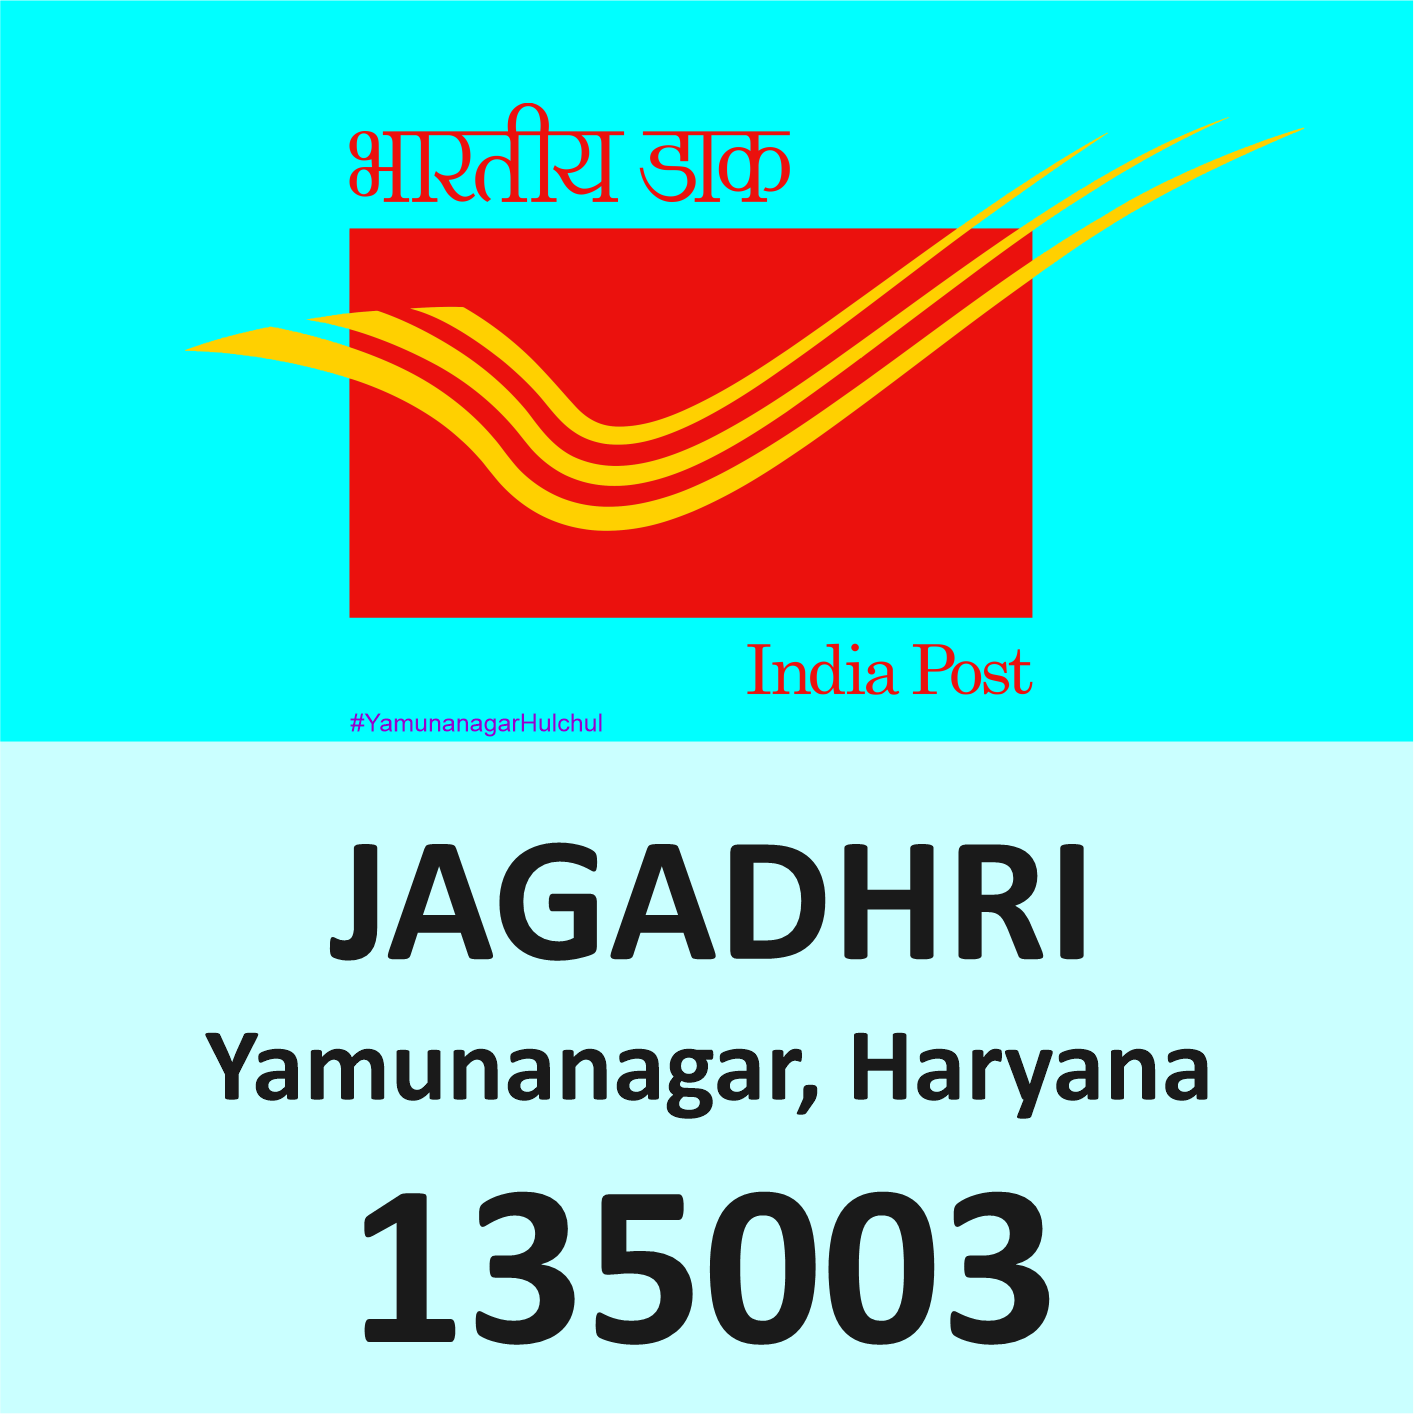 Pin Code of Jagadhri, Yamunanagar is 135003, #YamunanagarHulchul, #यमुनानगरहलचल, #PanditKhabri, Pandit Khabri, Pin Code of Yamunanagar, Haryana,